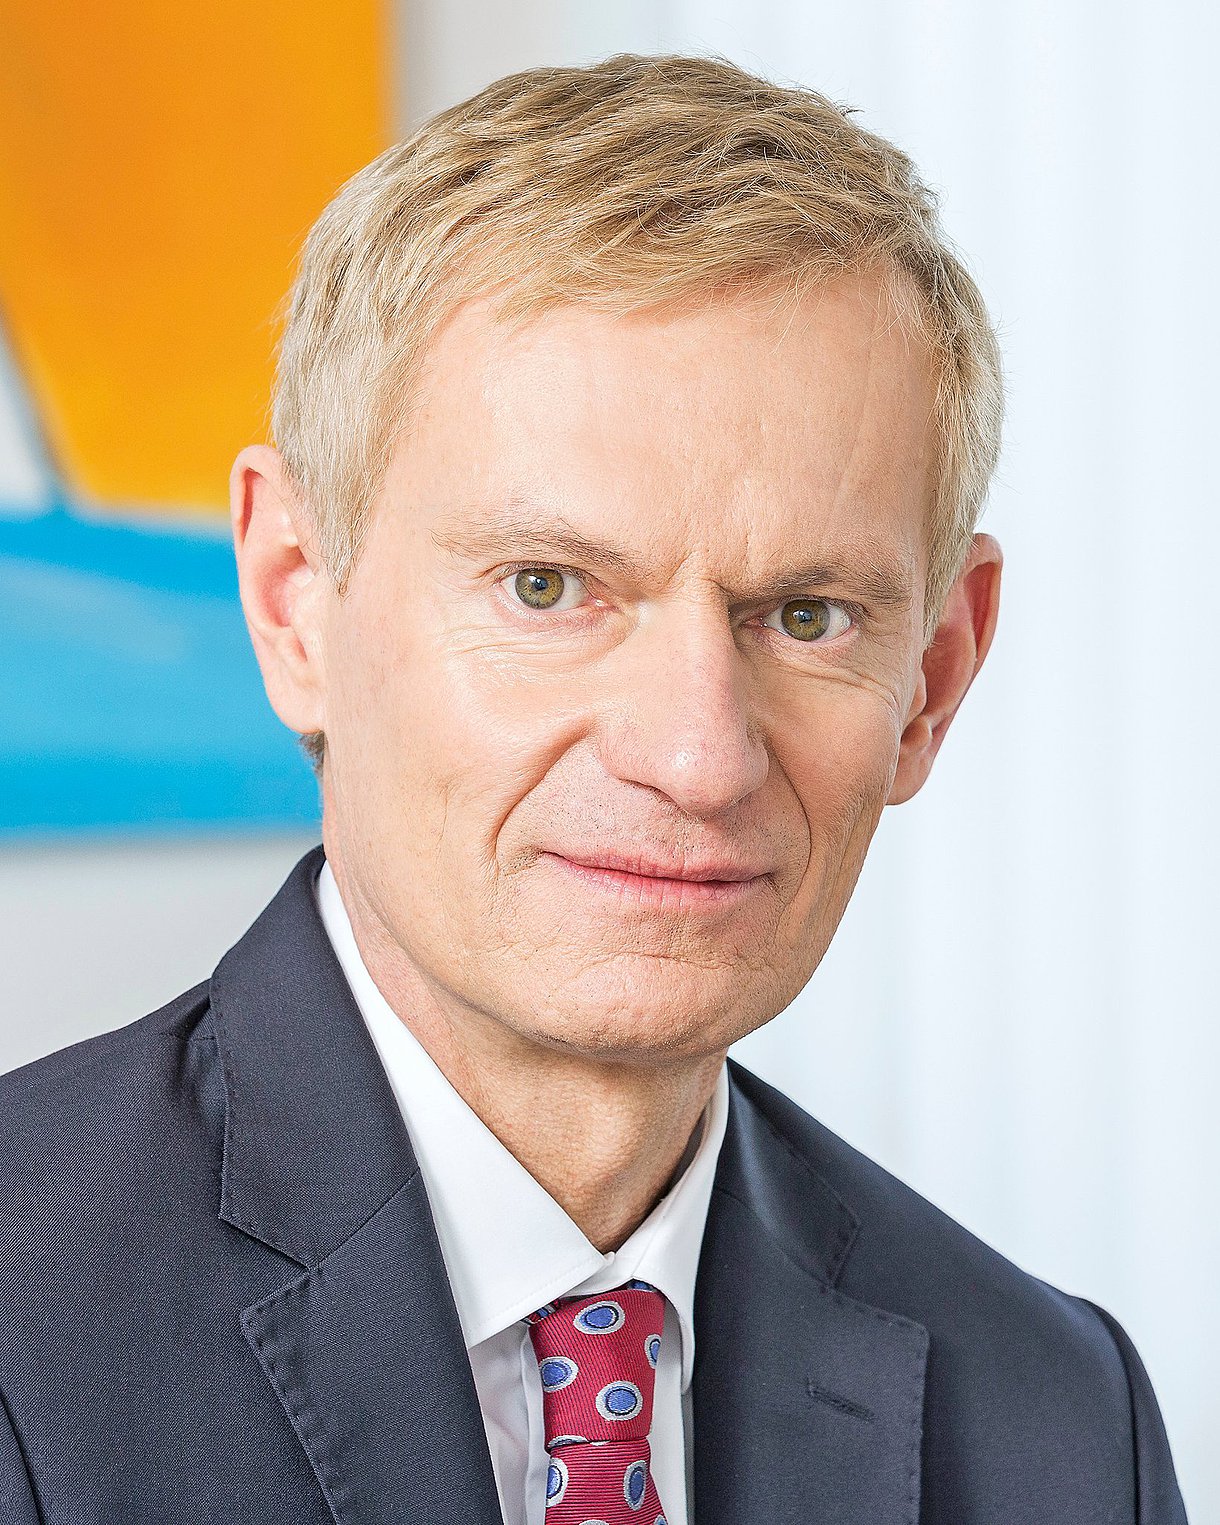 Foto: Porträtbild von Dr. Jürgen Peter, Vorstandsvorsitzender der AOK Niedersachsen